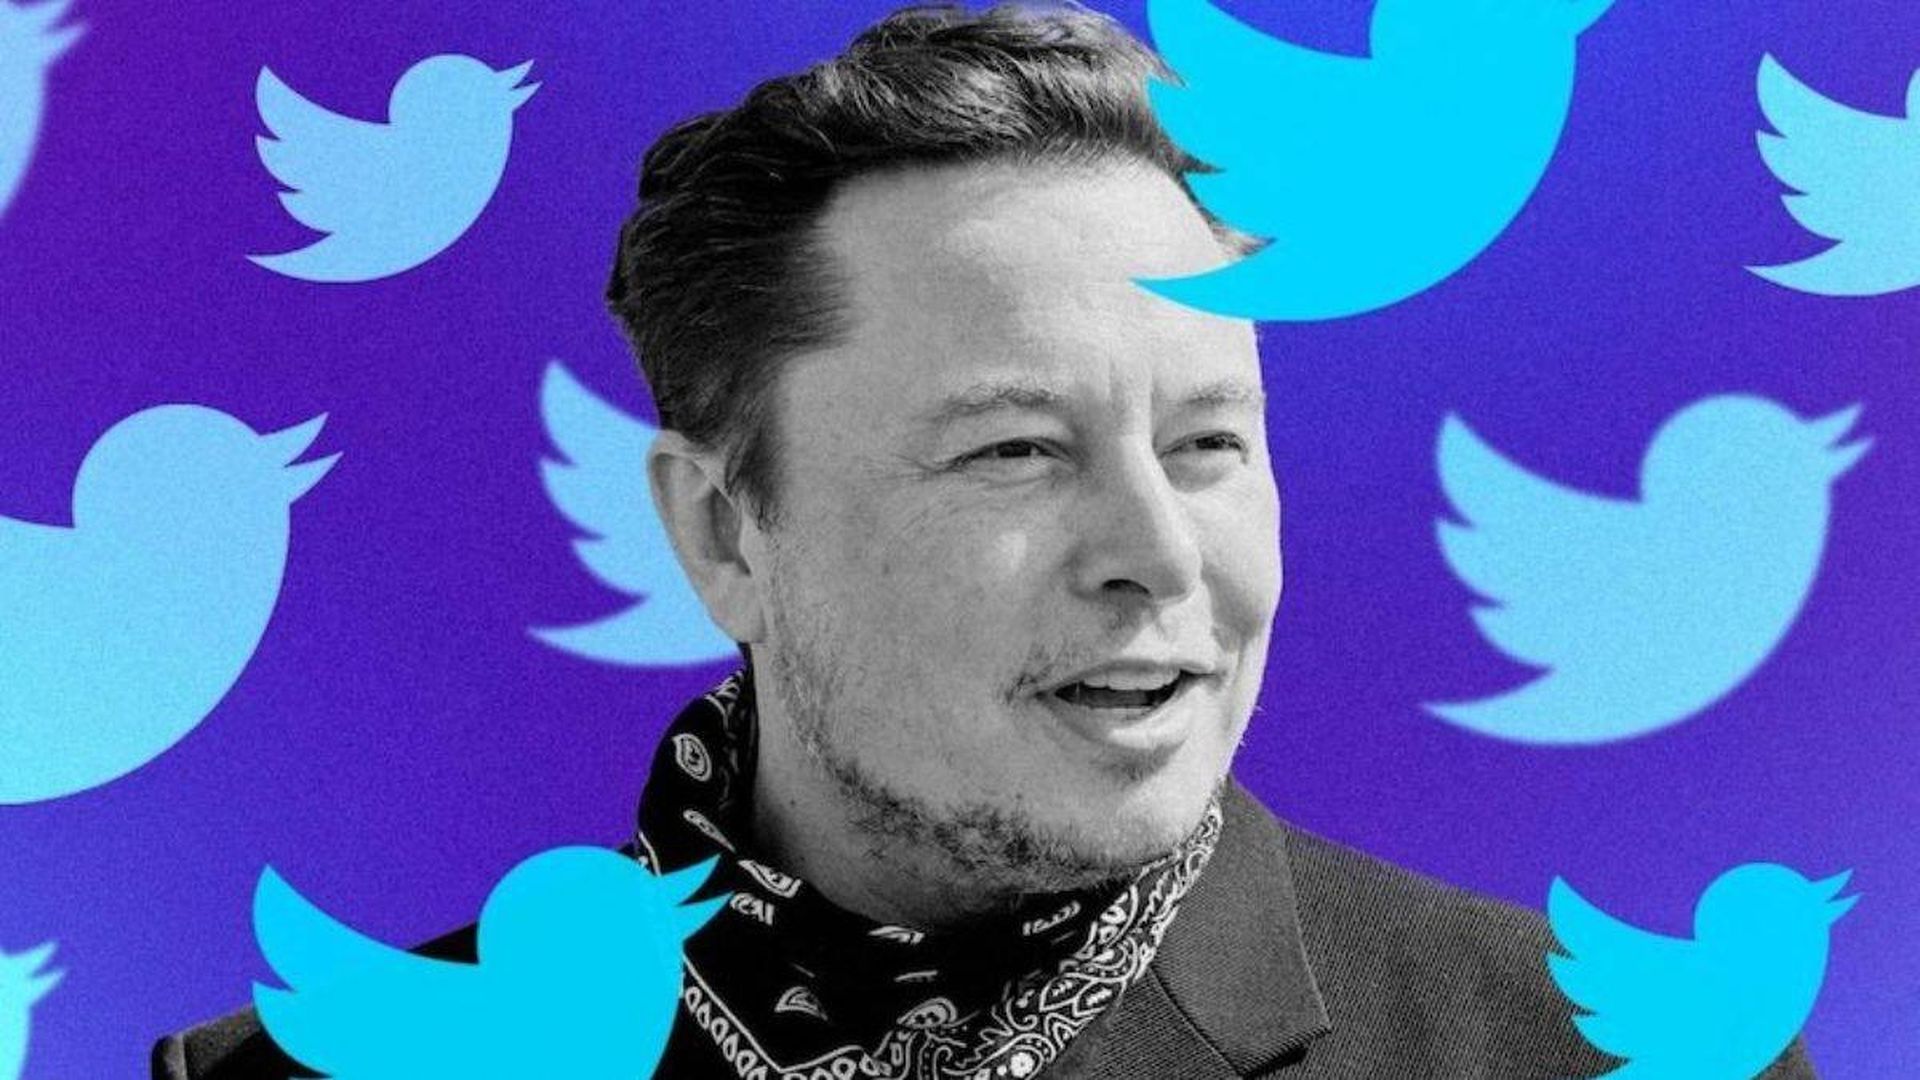 Der Twitter-Deal mit Elon Musk liegt auf Eis